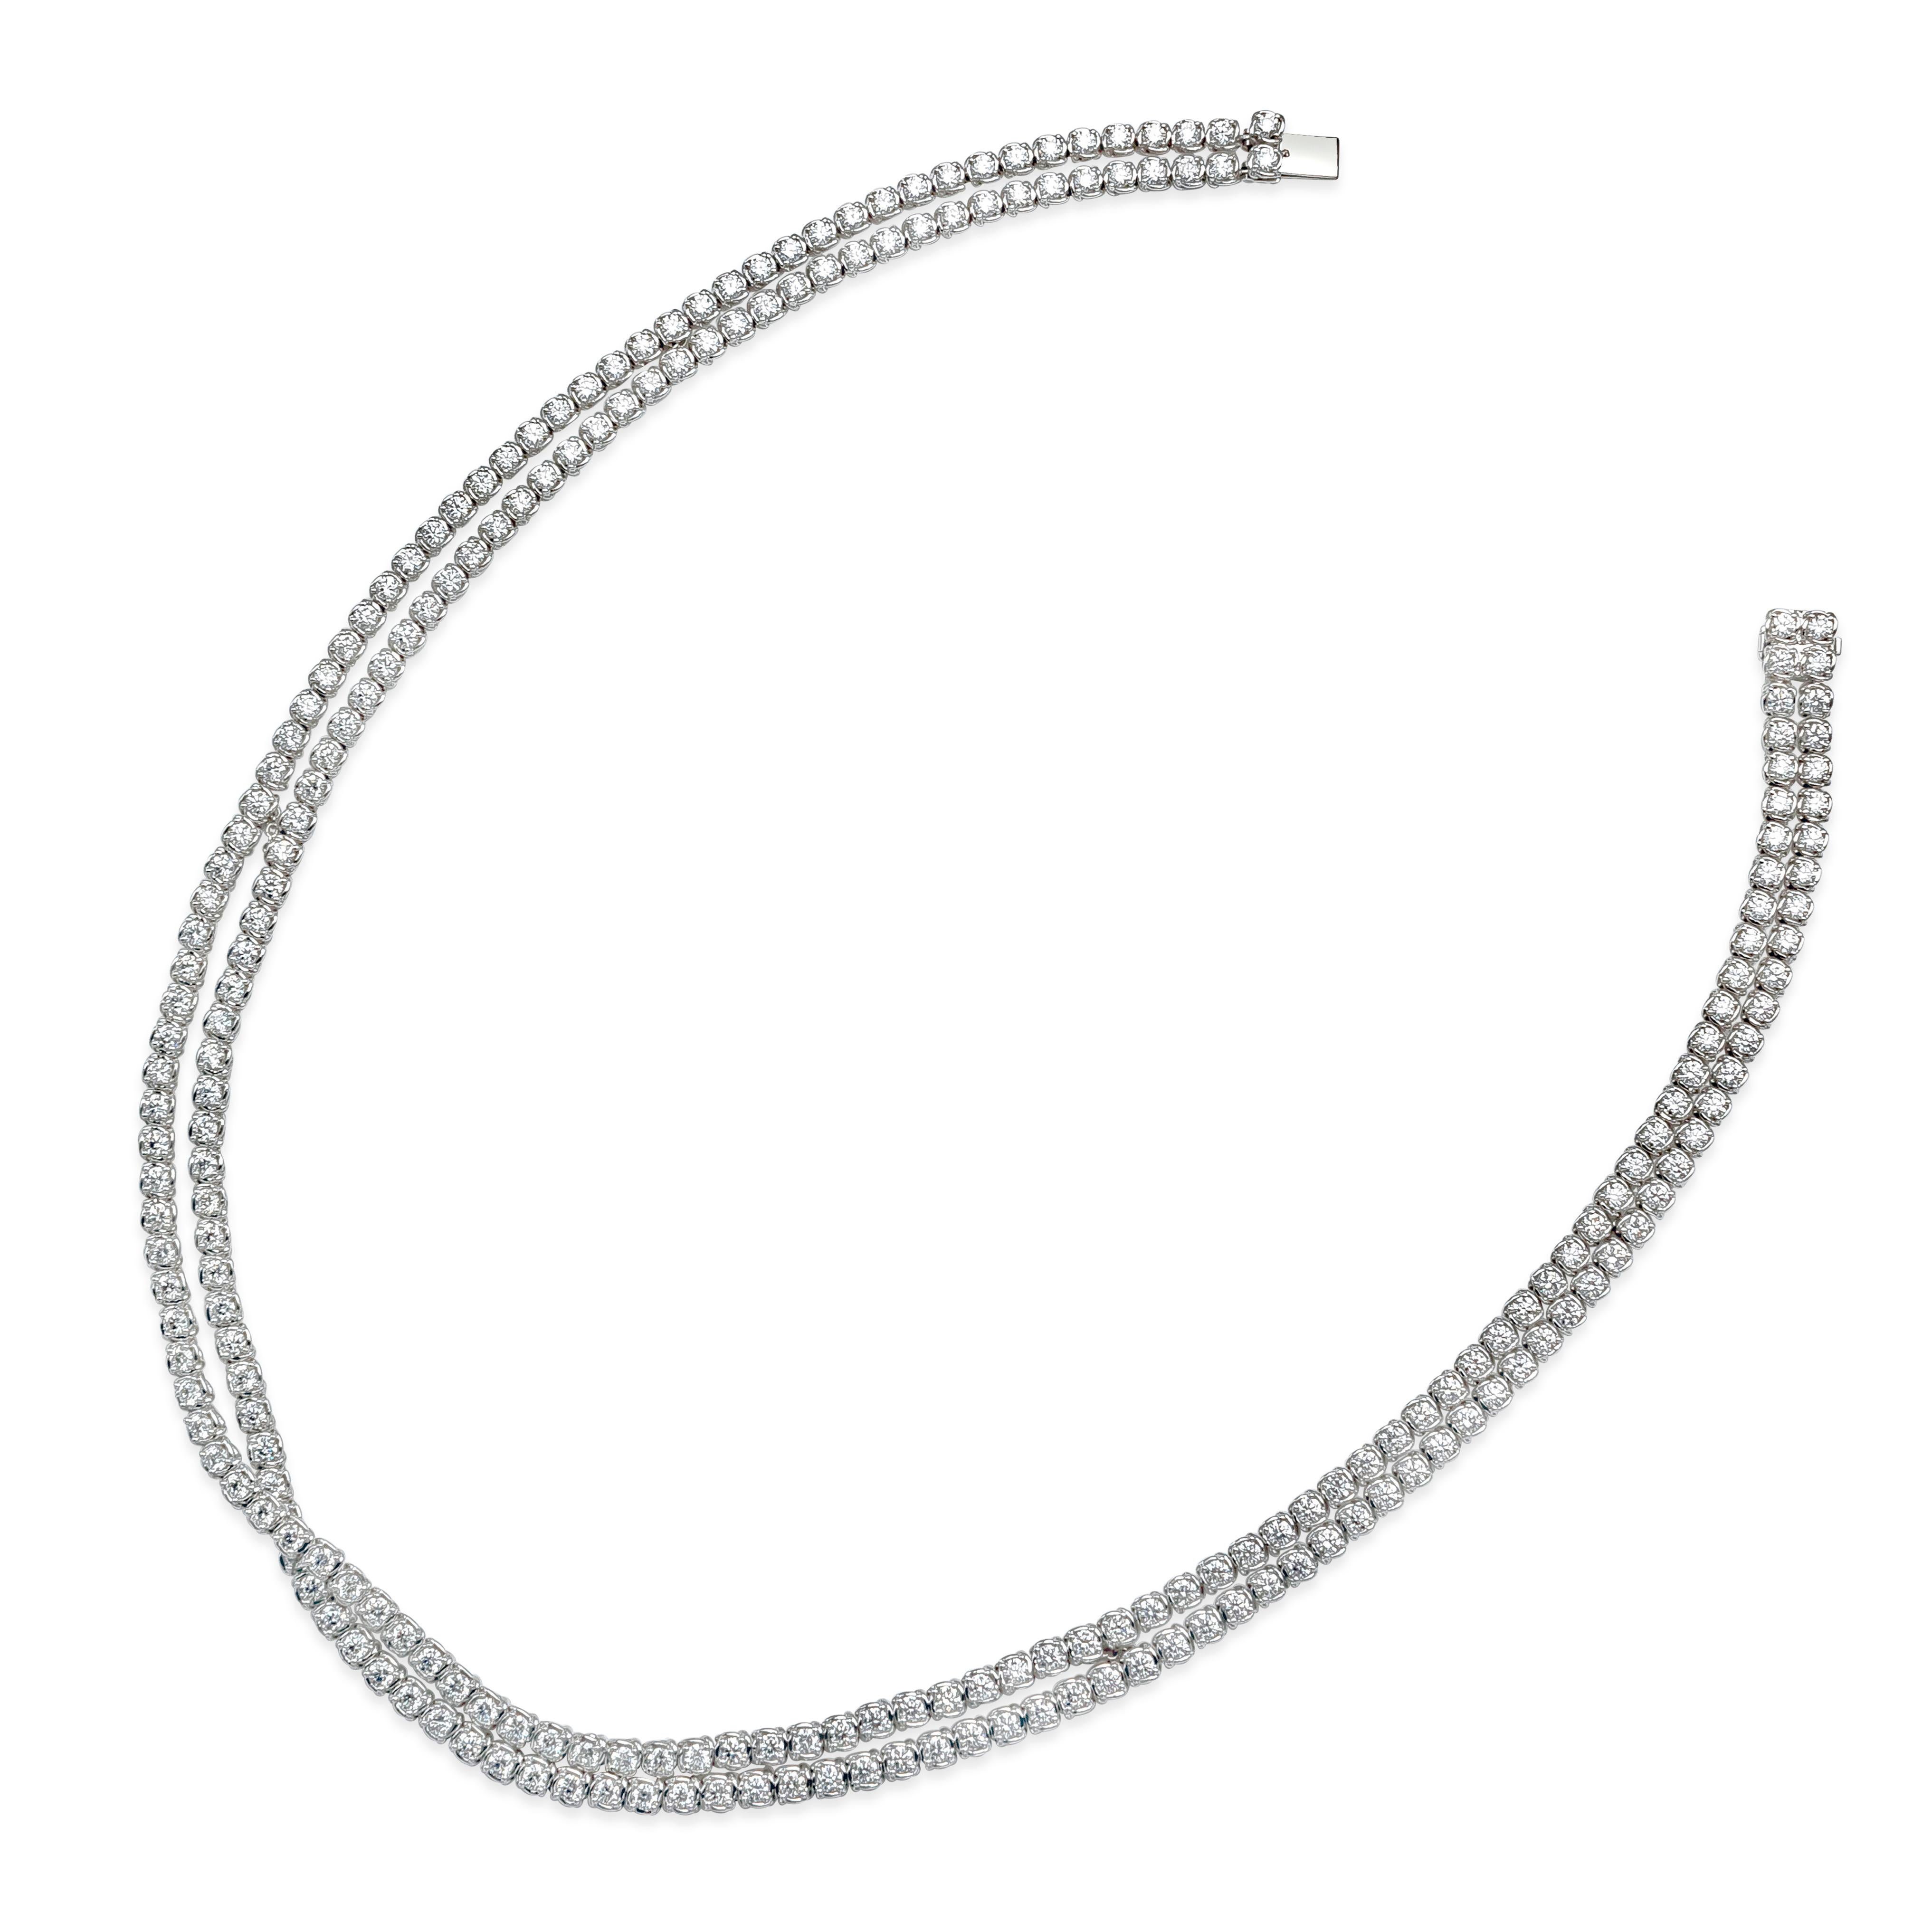 Contemporary Roman Malakov 11.90 Carat Total Round Diamond Crossover Diamond Tennis Necklace For Sale